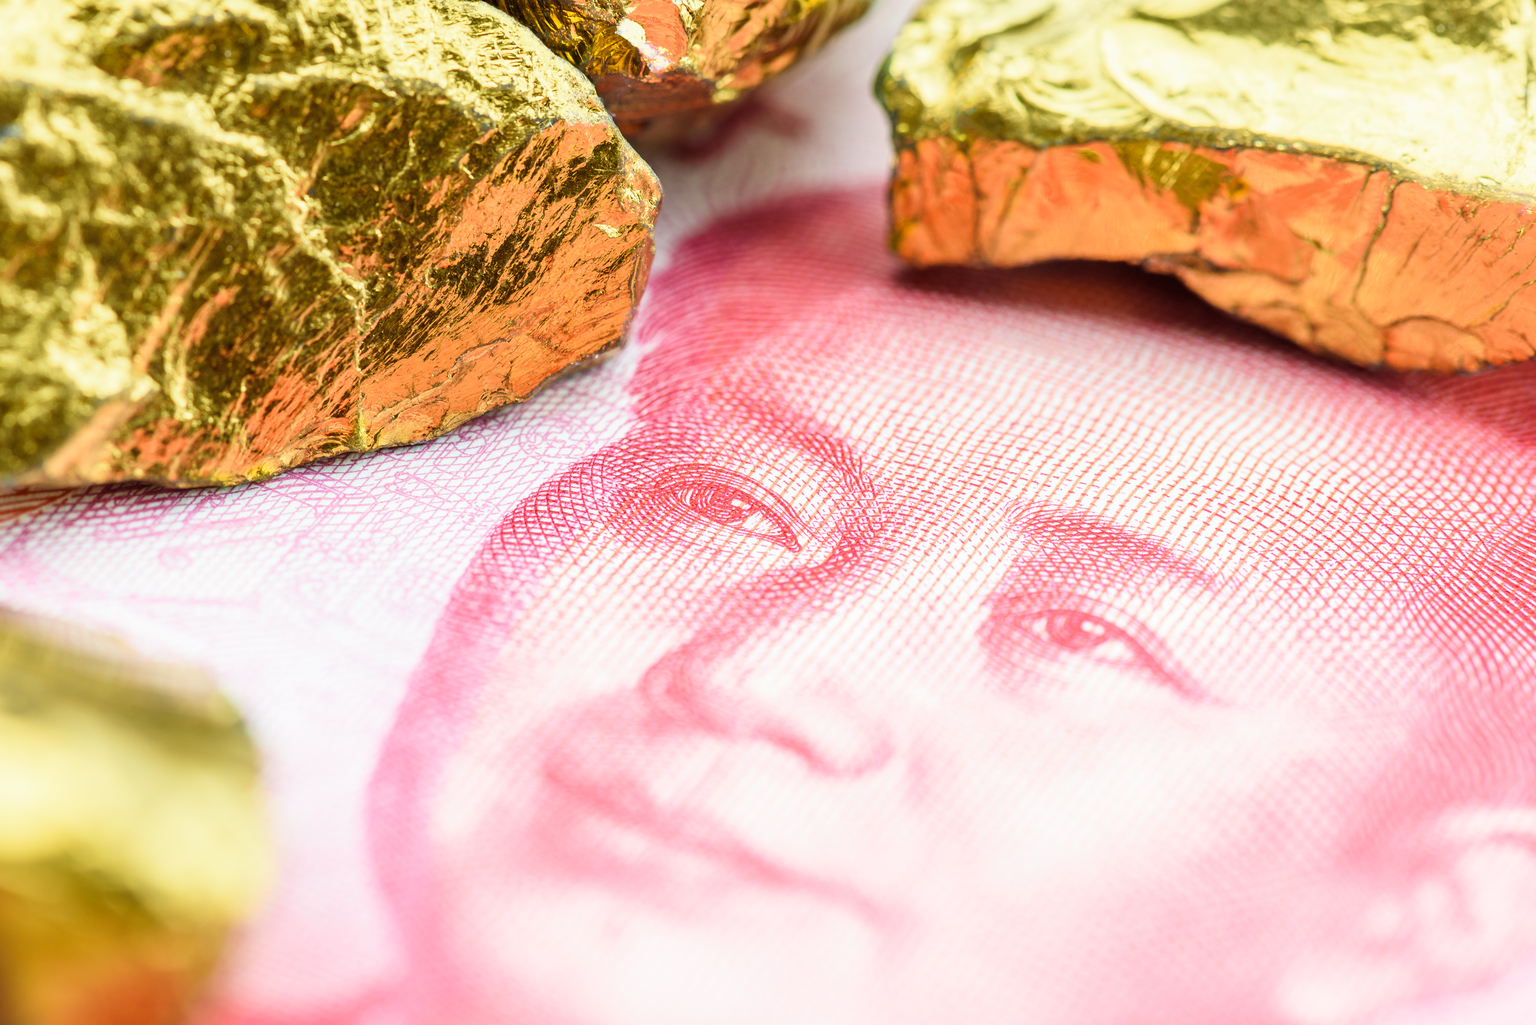 Trung Quốc thật sự dữ trữ bao nhiêu vàng?